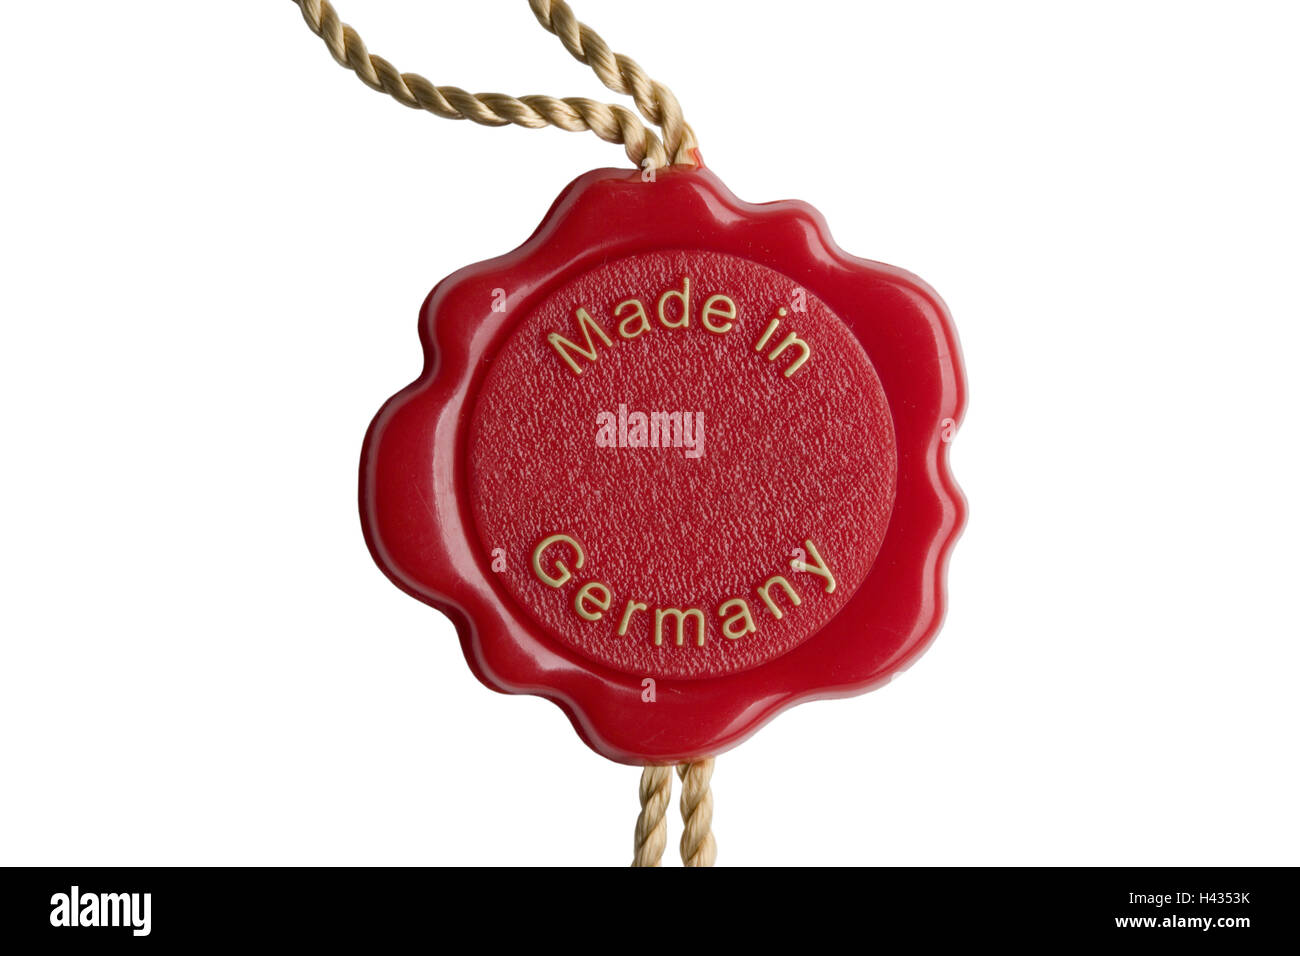 Qualität Kurzform, in deutscher Sprache, "Made in Germany", schneiden Outs, Nahaufnahme, Stockfoto